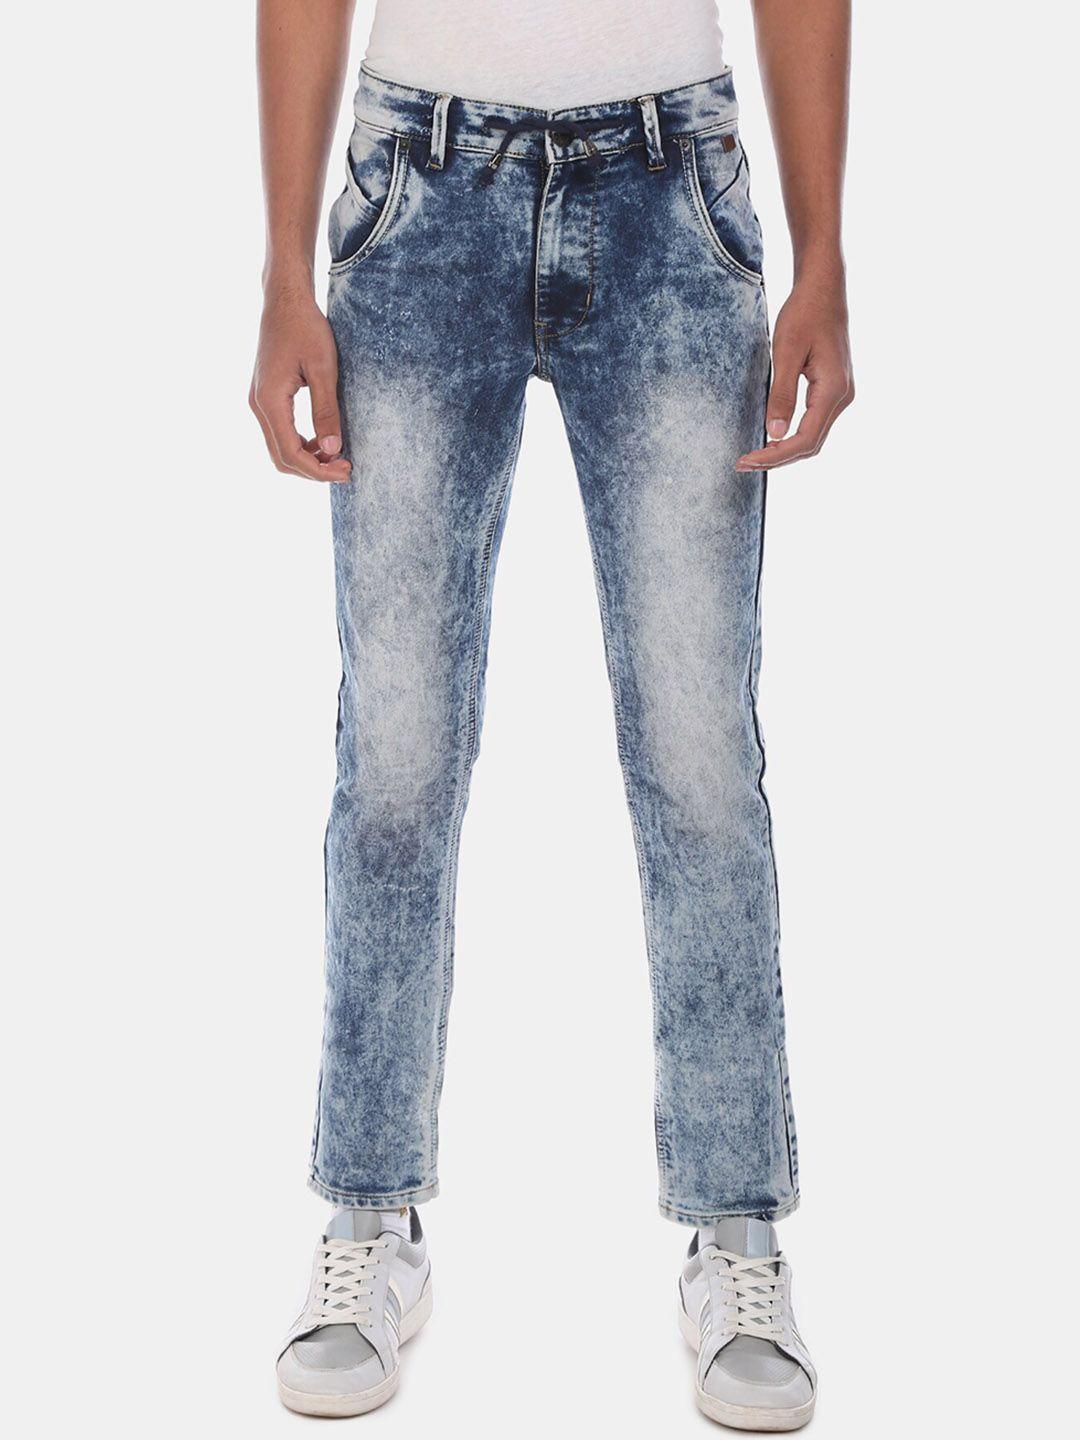 cherokee-men-blue-regular-fit-mid-rise-clean-look-jeans